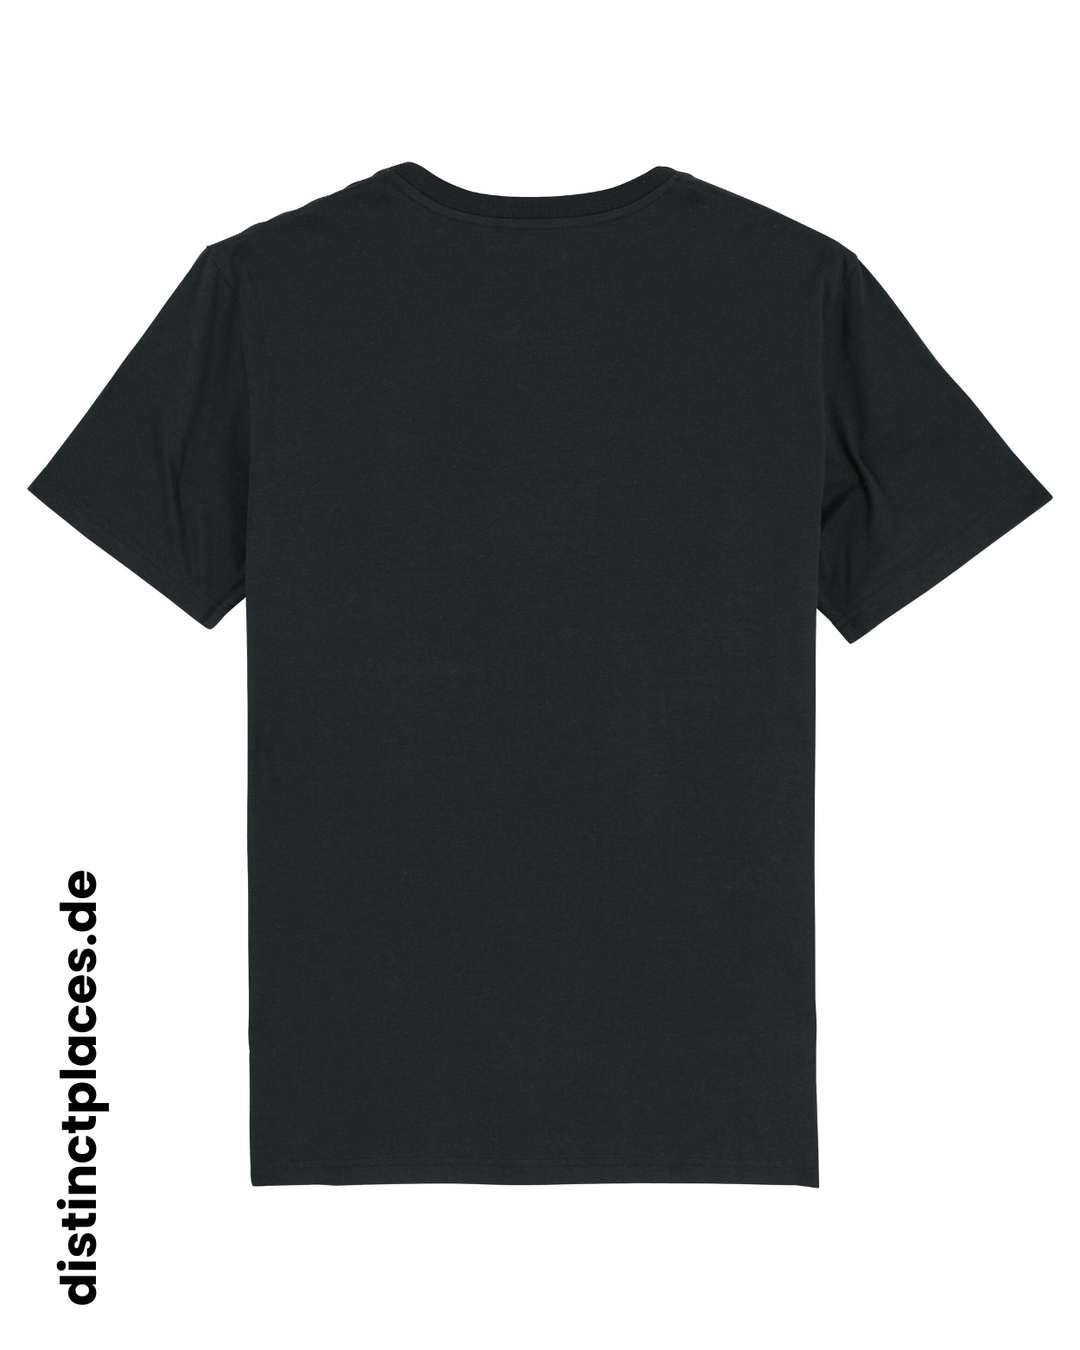 Schwarzes fairtrade, vegan und bio-baumwoll T-Shirt von hinten mit einem minimalistischem weißen Logo, beziehungsweise Wappen für Wiesbaden